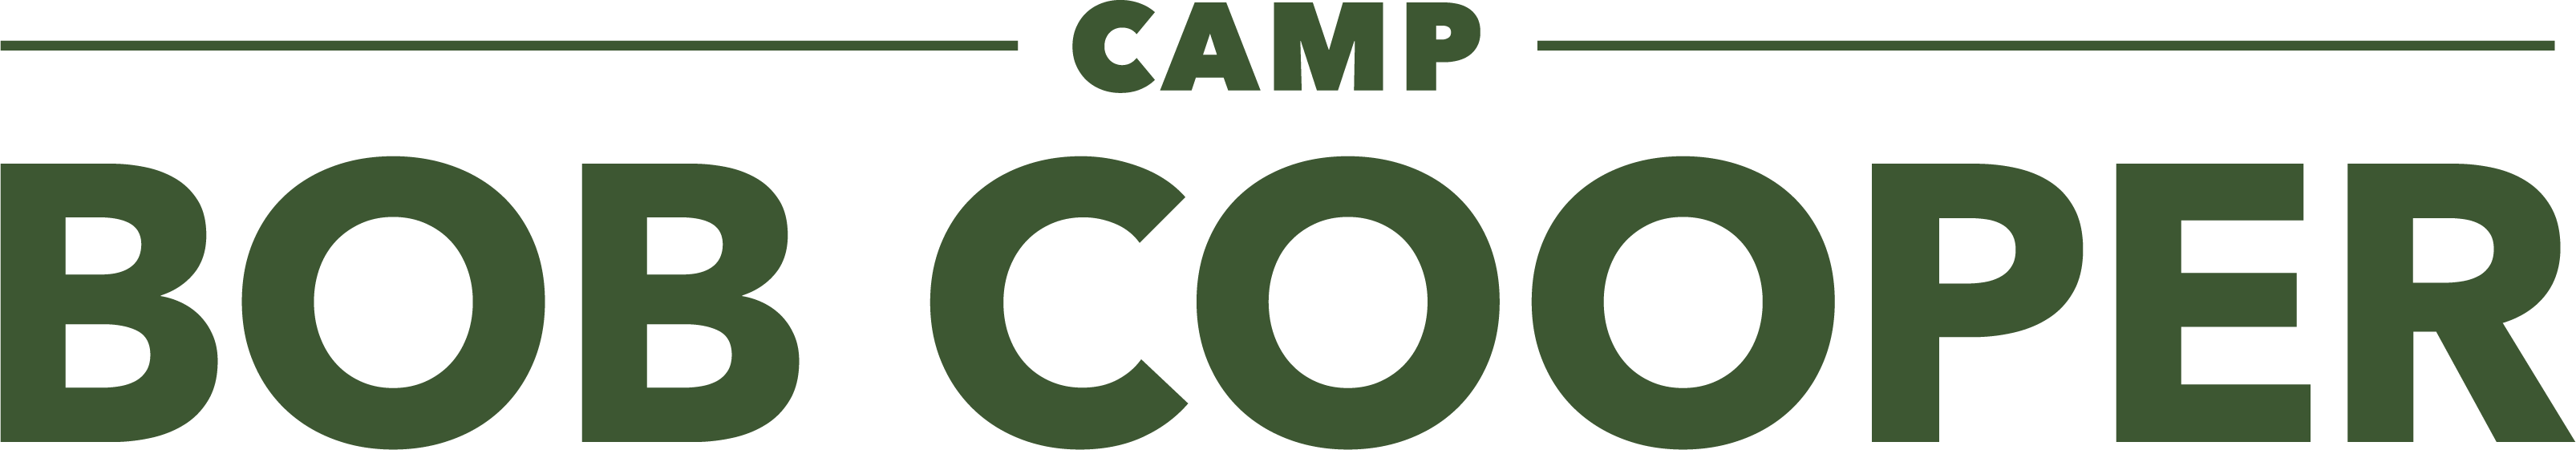 Camp Bob Cooper